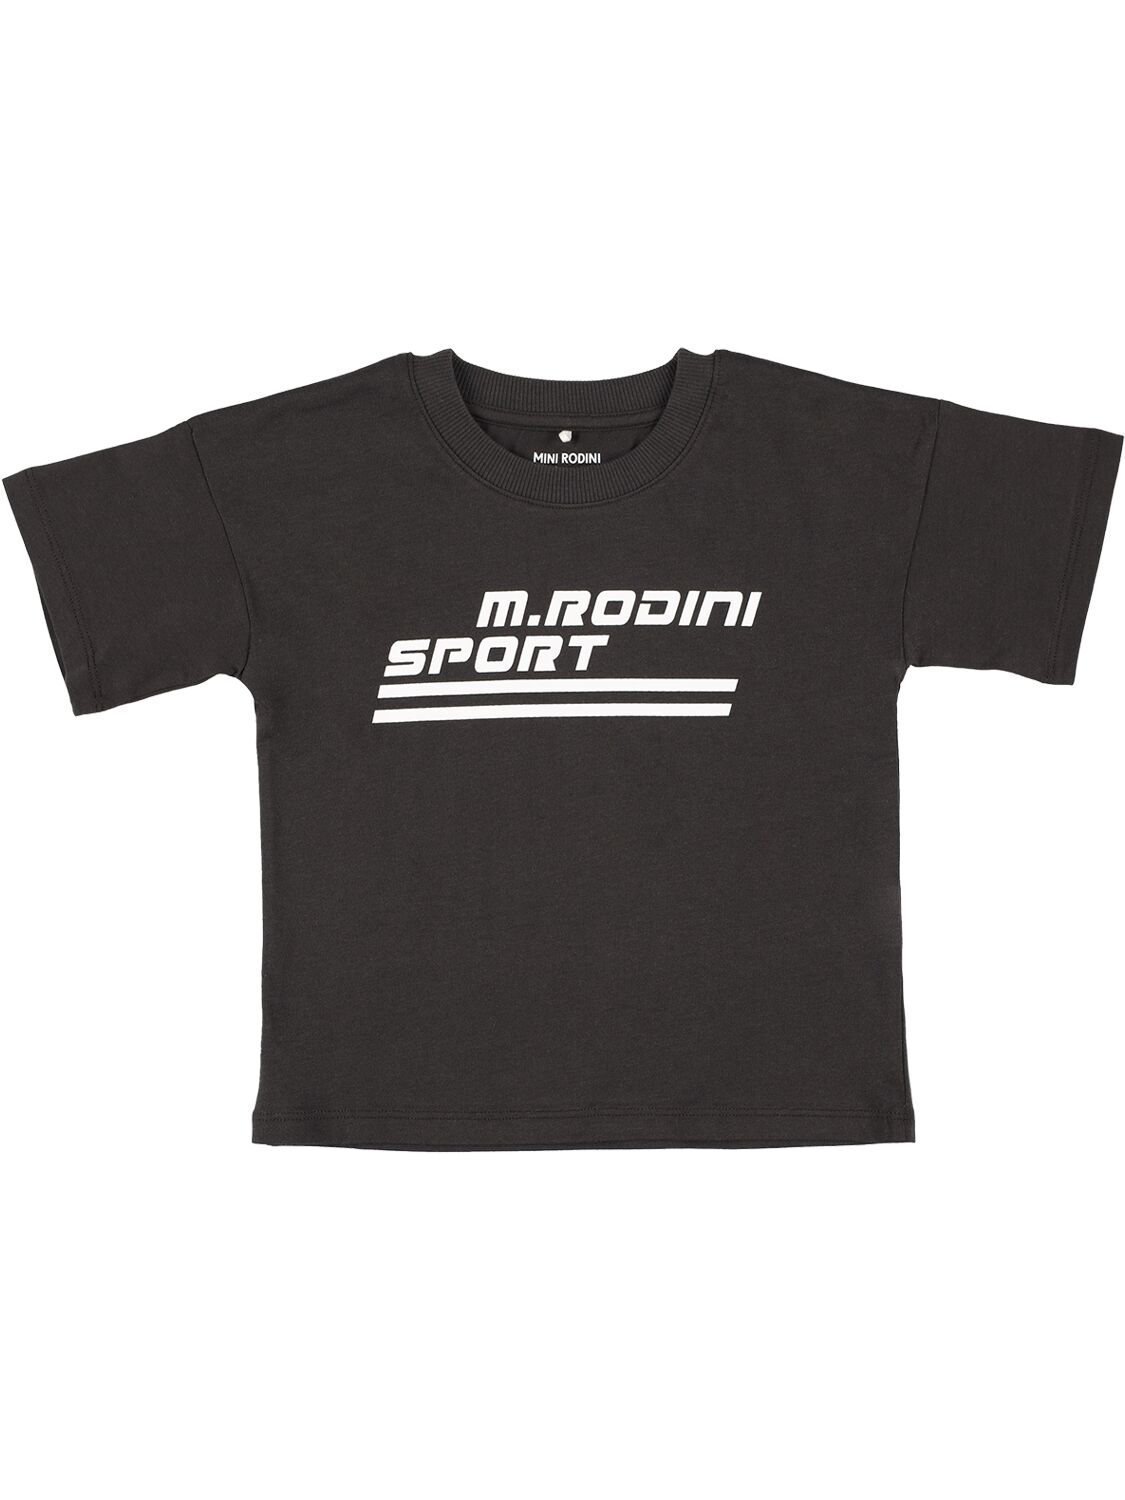 T-shirt In Cotone Con Stampa - MINI RODINI - Modalova